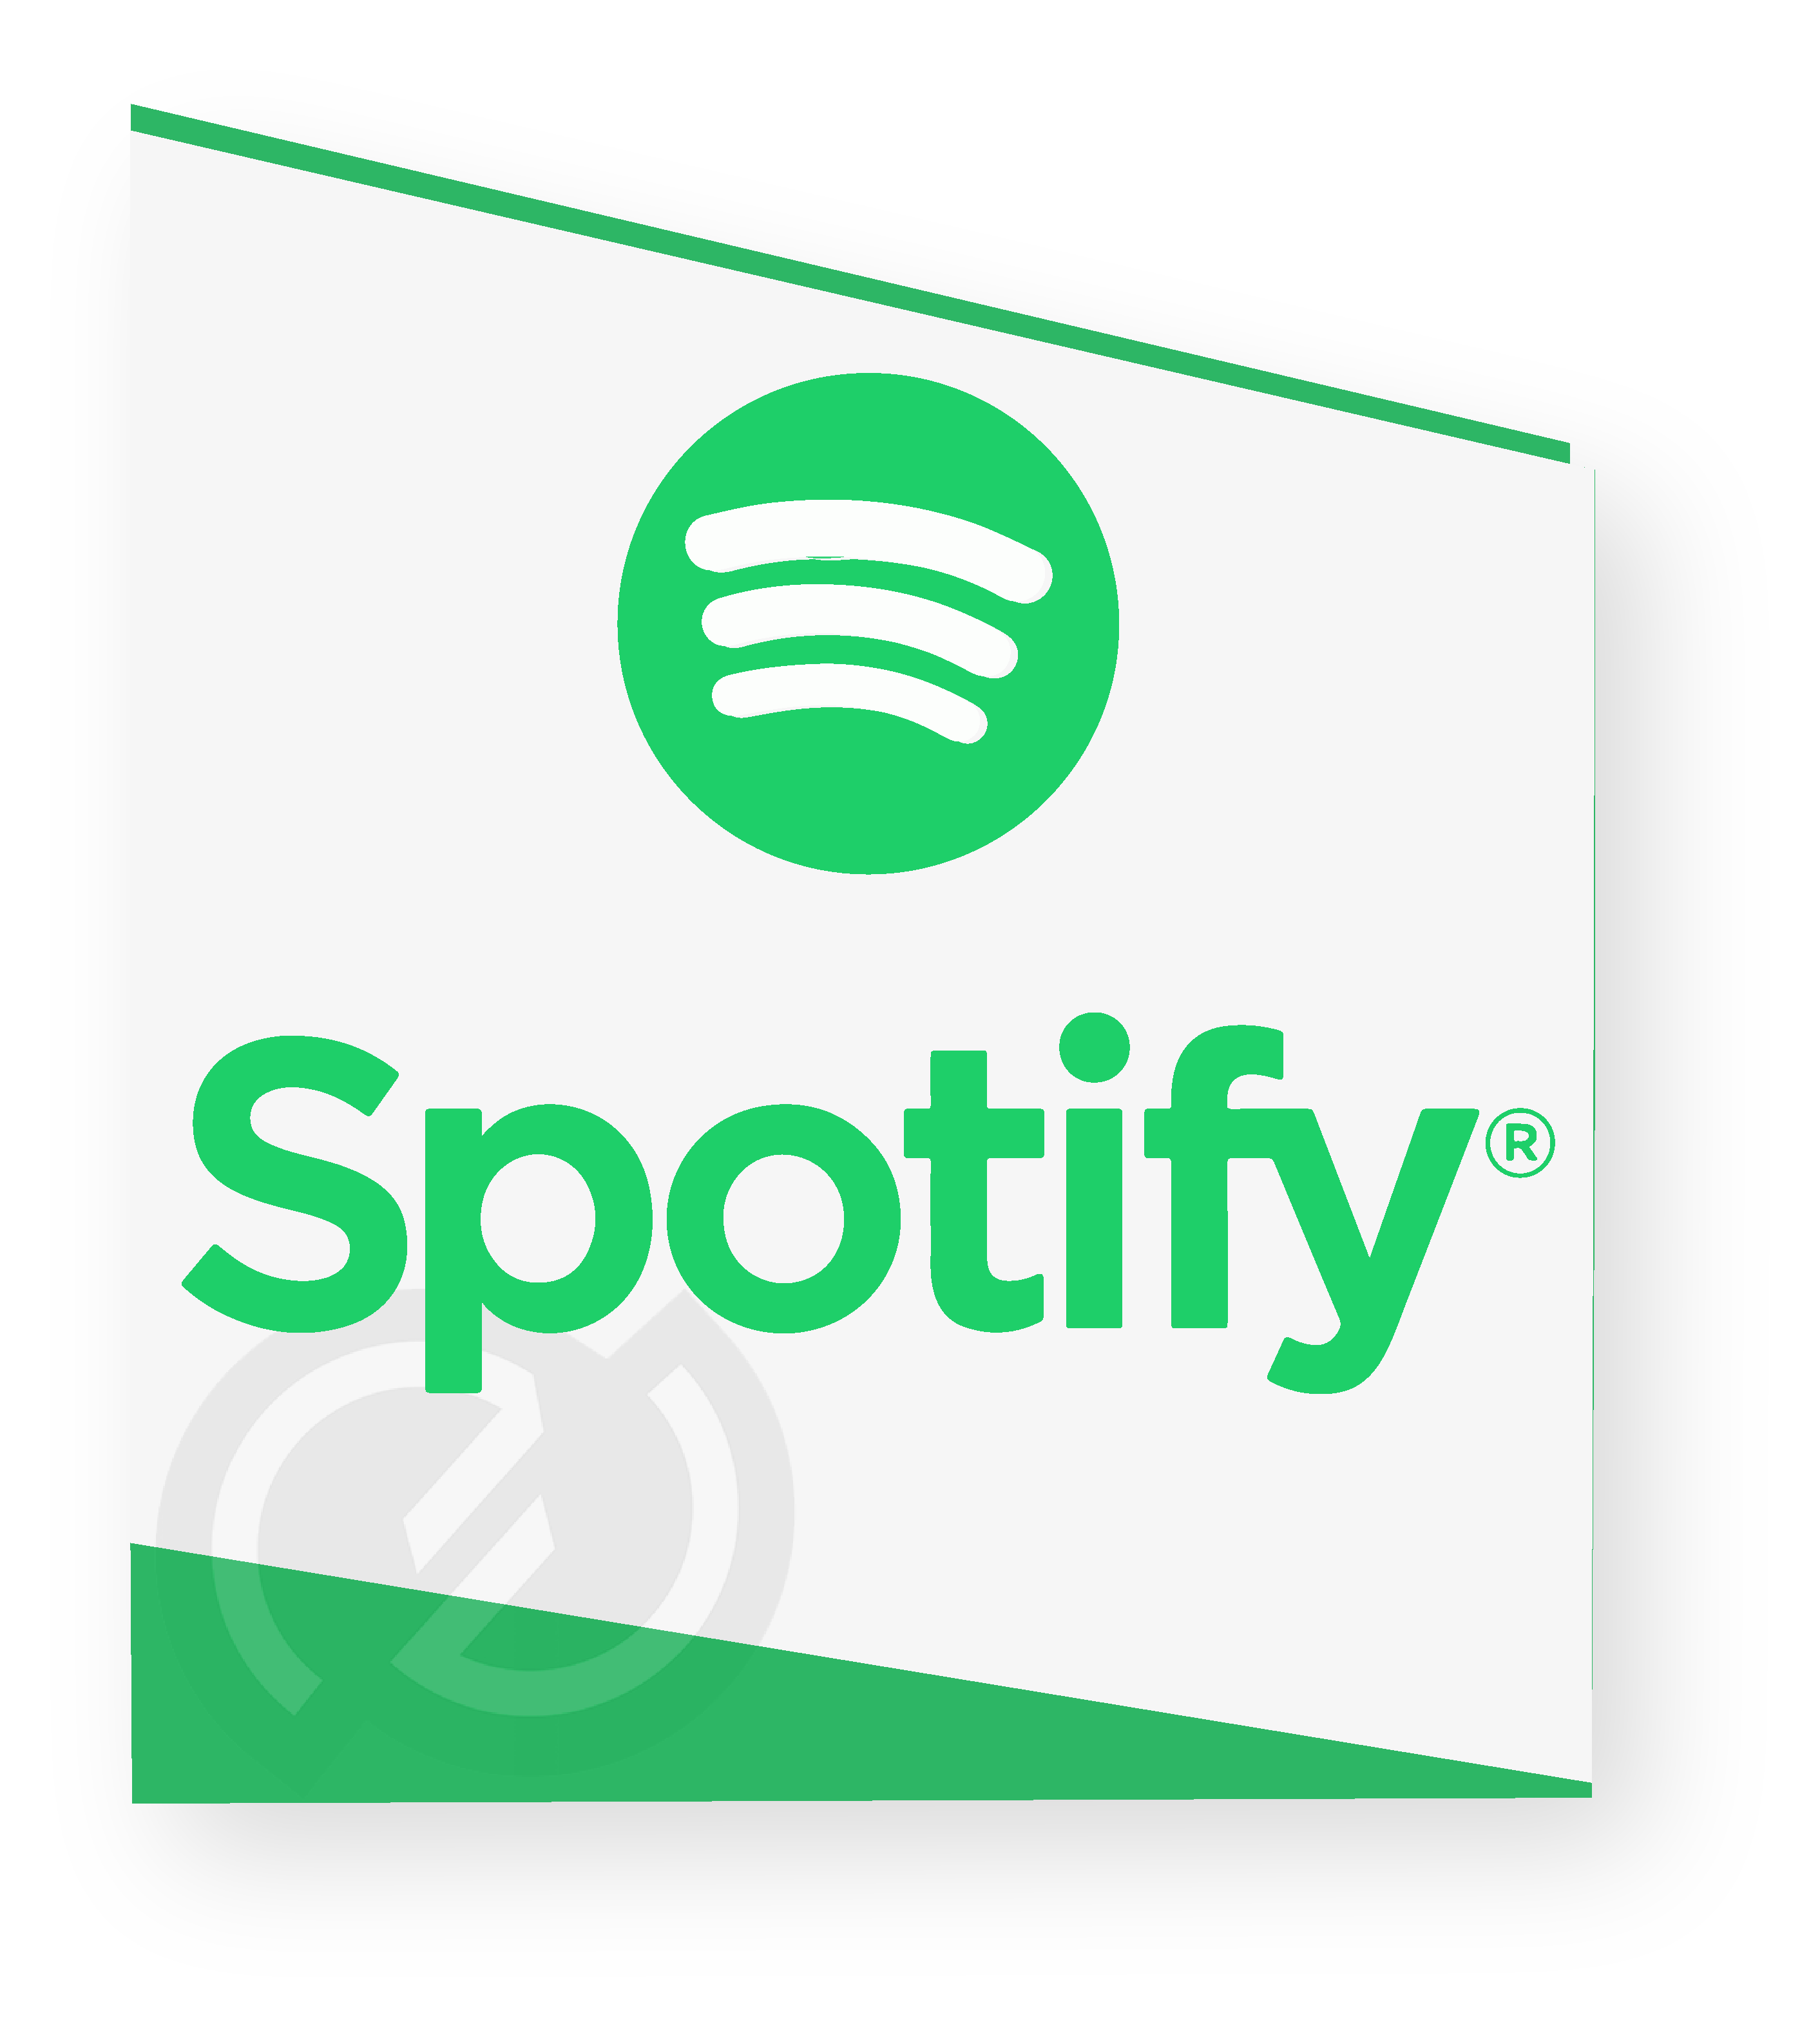 Image logo Spotify